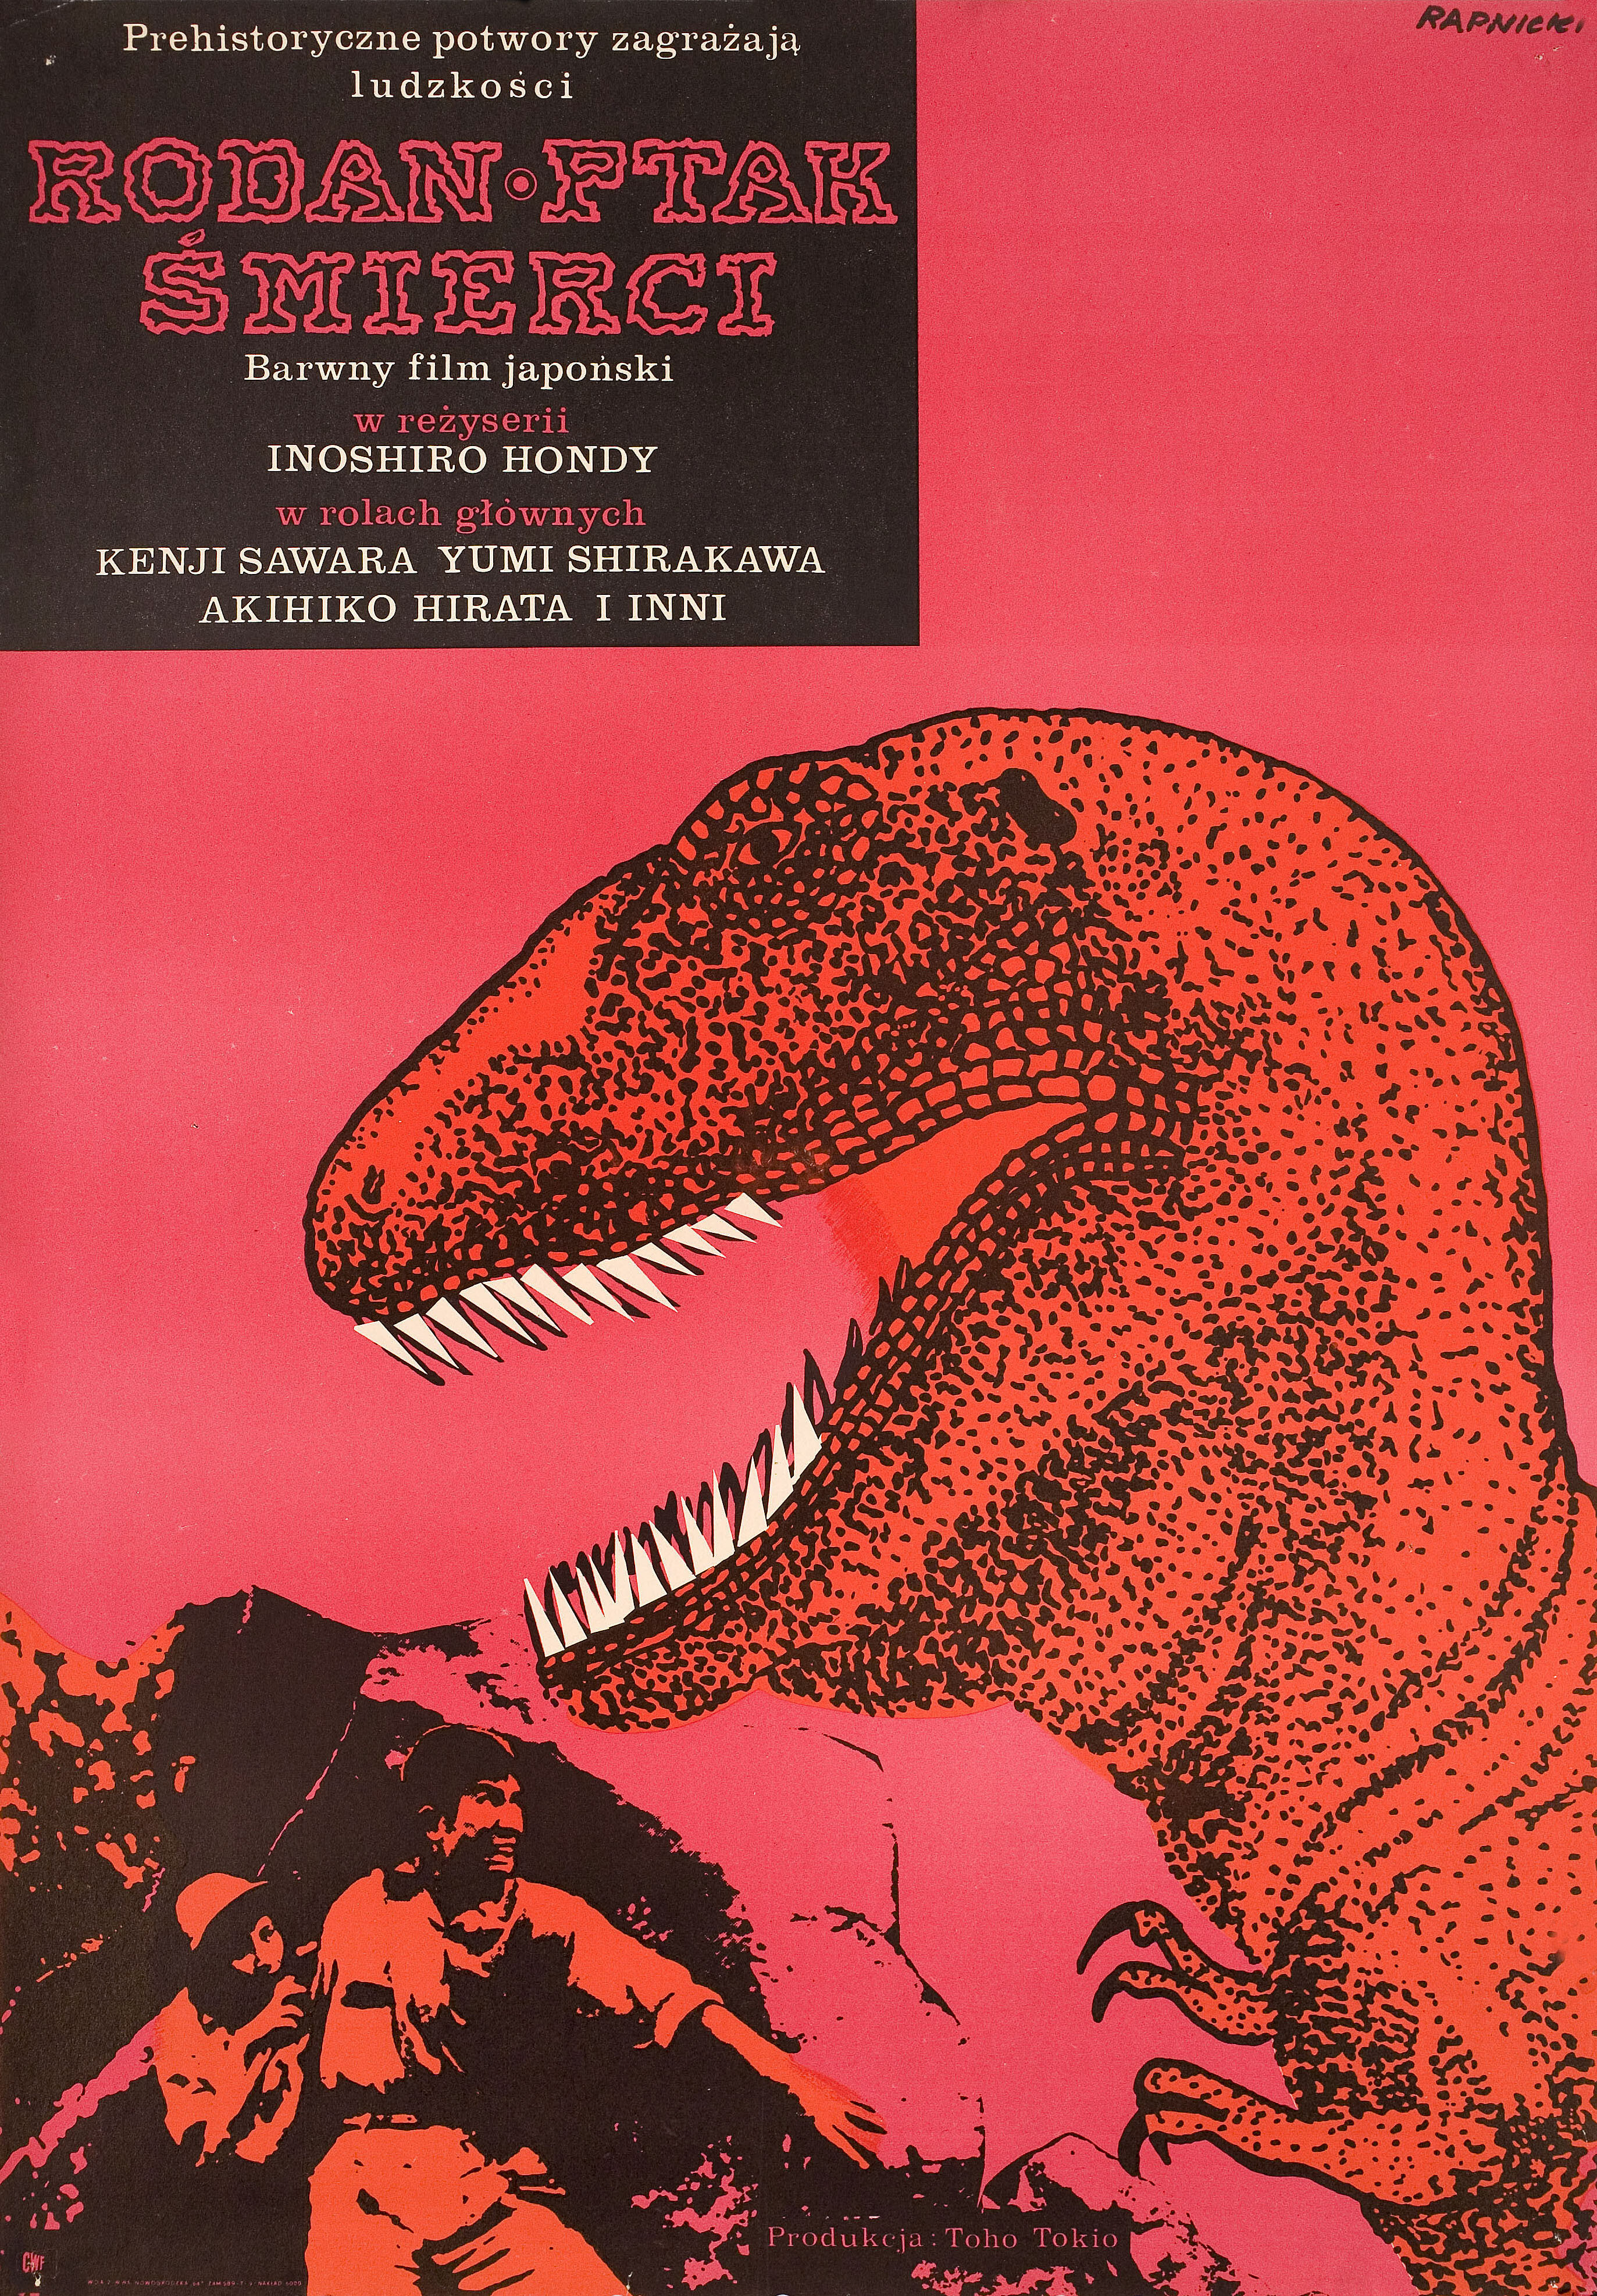 Радон (Rodan, 1956), режиссёр Исиро Хонда, польский постер к фильму, автор Януш Рапницкий (монстры, 1957 год)